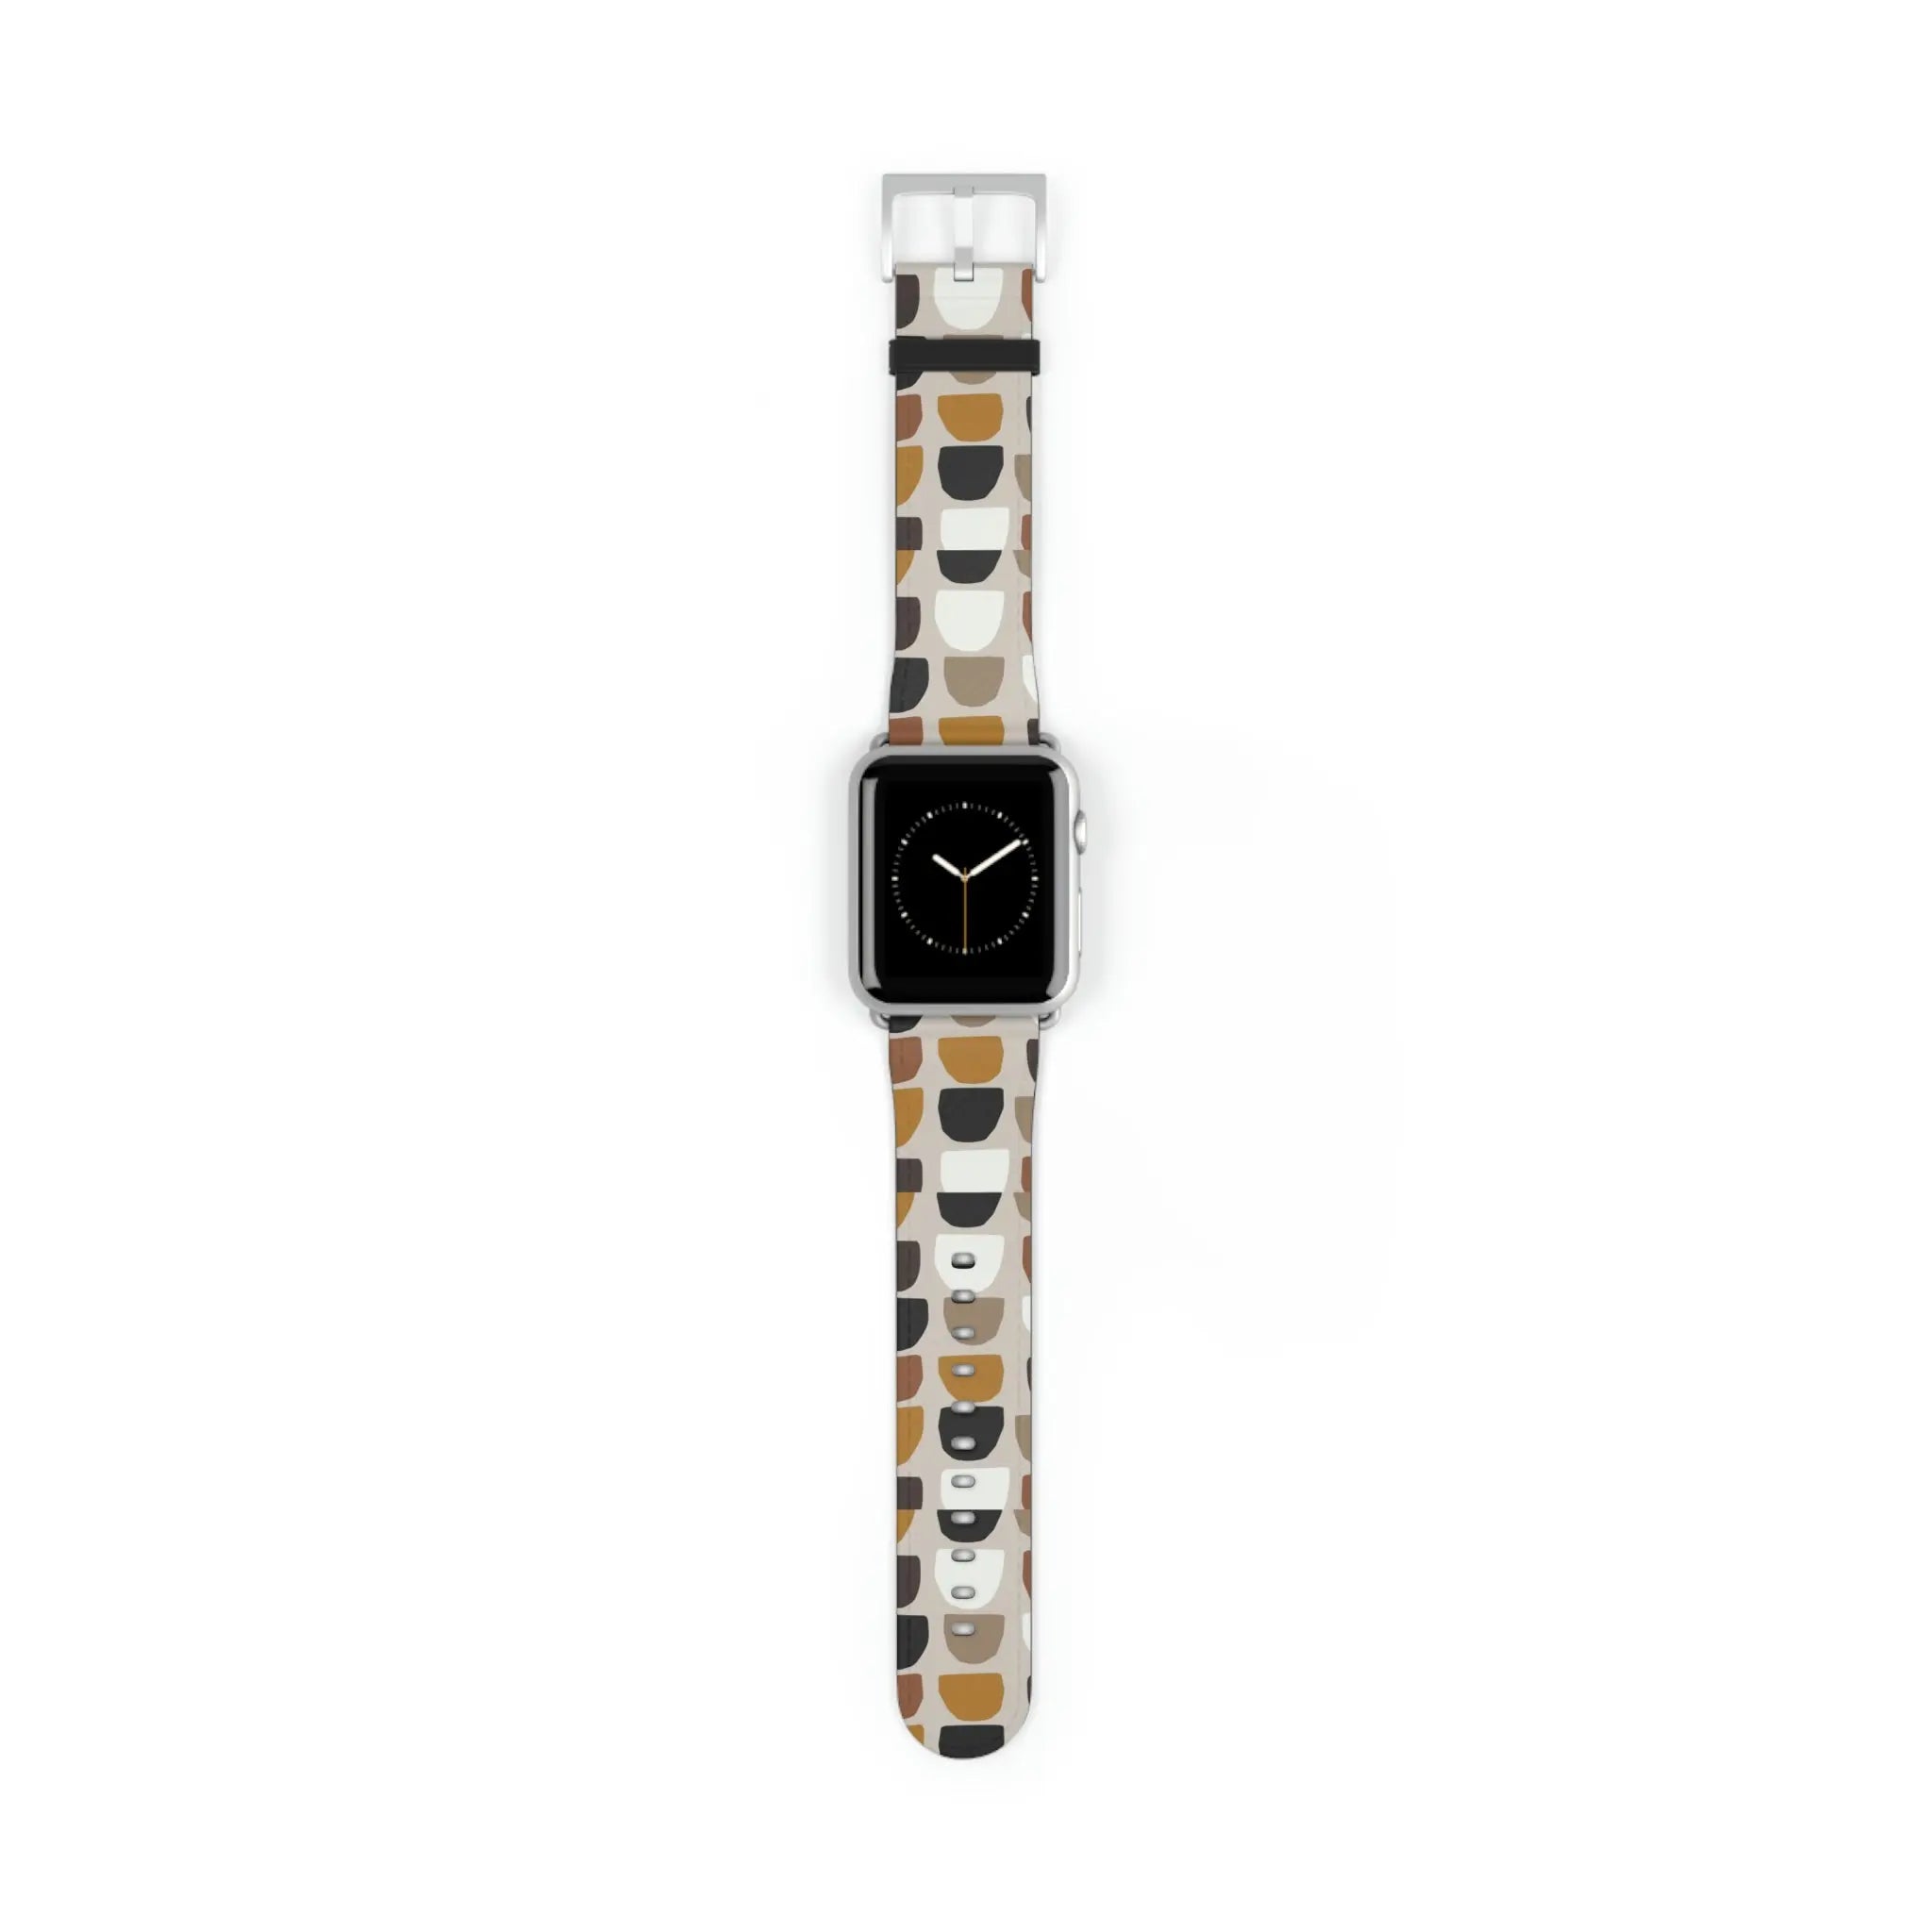  Boho (Khaki) Apple Watch Band Accessories42-45mmSilverMatte